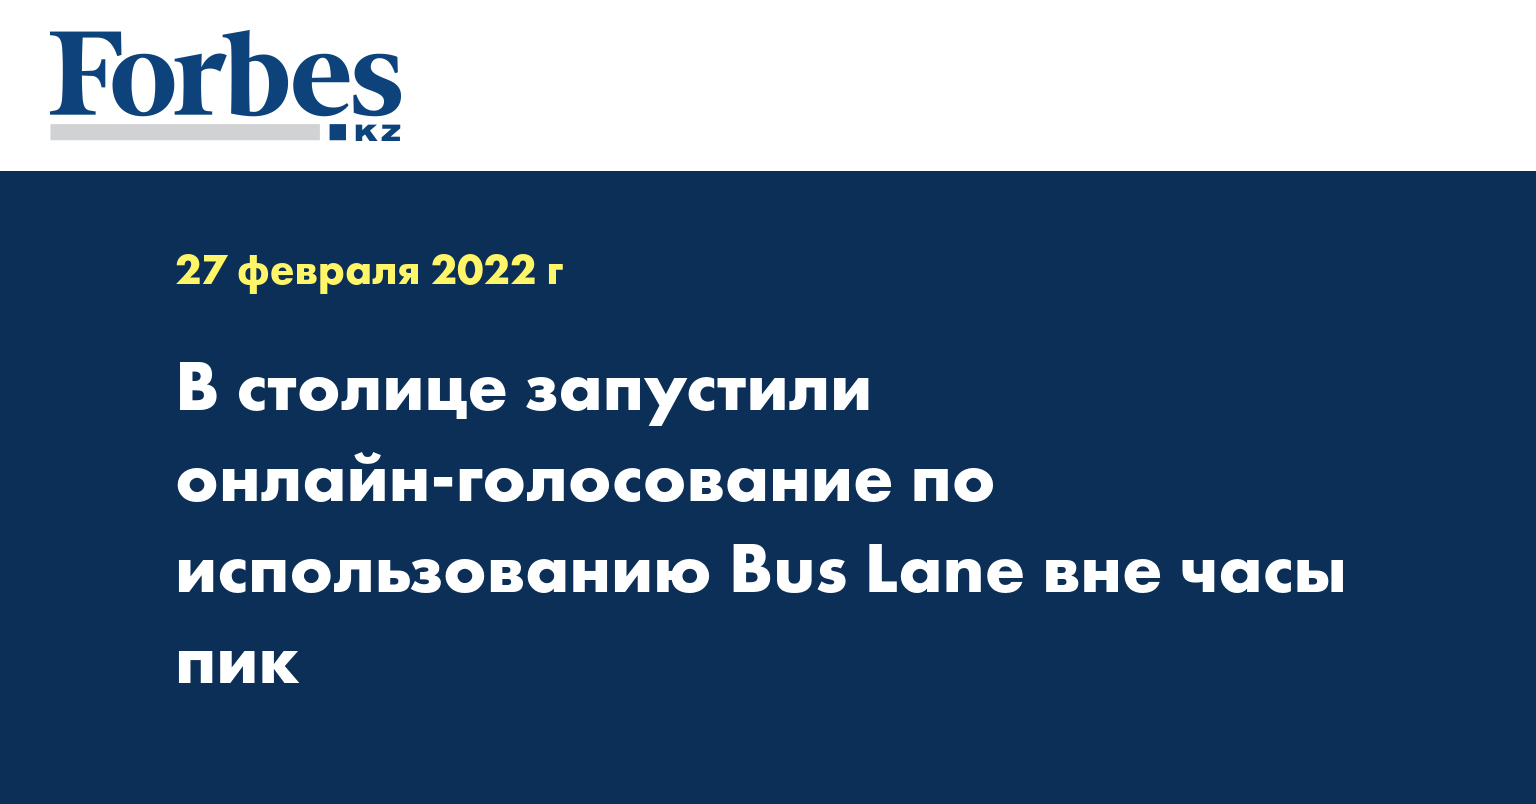 В столице запустили онлайн-голосование по использованию Bus Lane вне часы пик